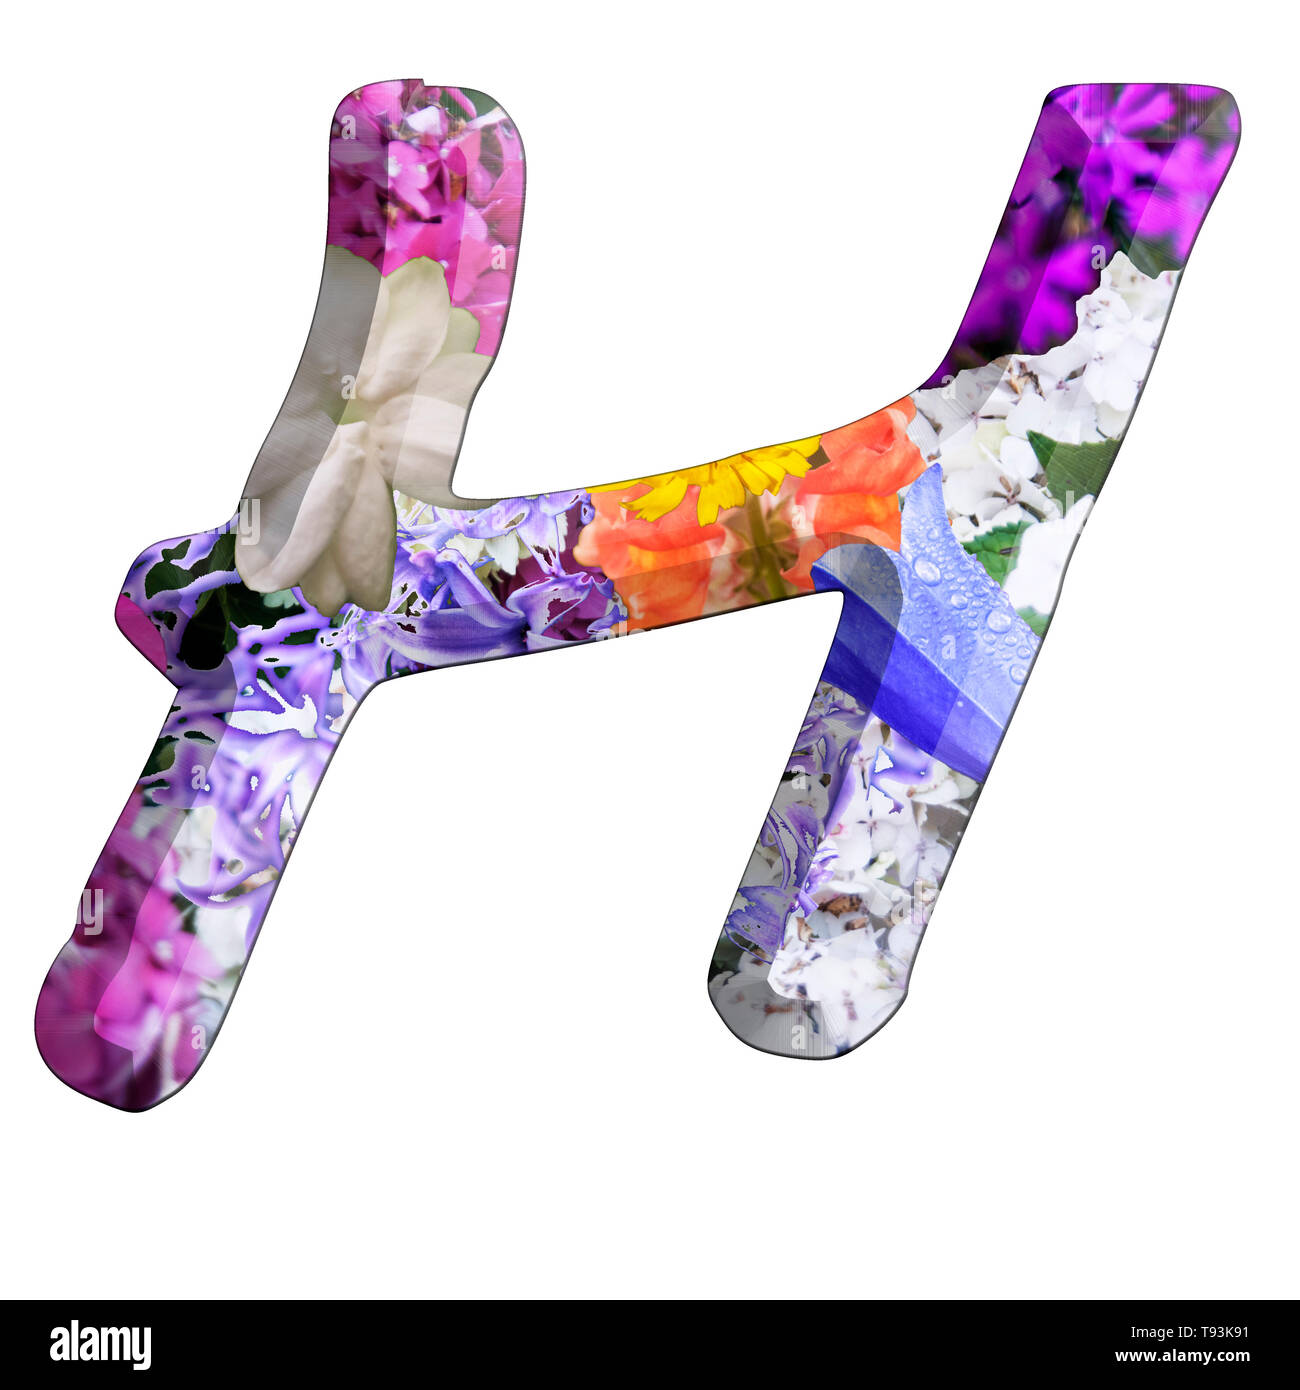 Le Capitole Lettre H Partie d'un ensemble de lettres, chiffres et symboles de l'alphabet en 3D faites avec des images de fleurs colorées sur fond blanc Banque D'Images